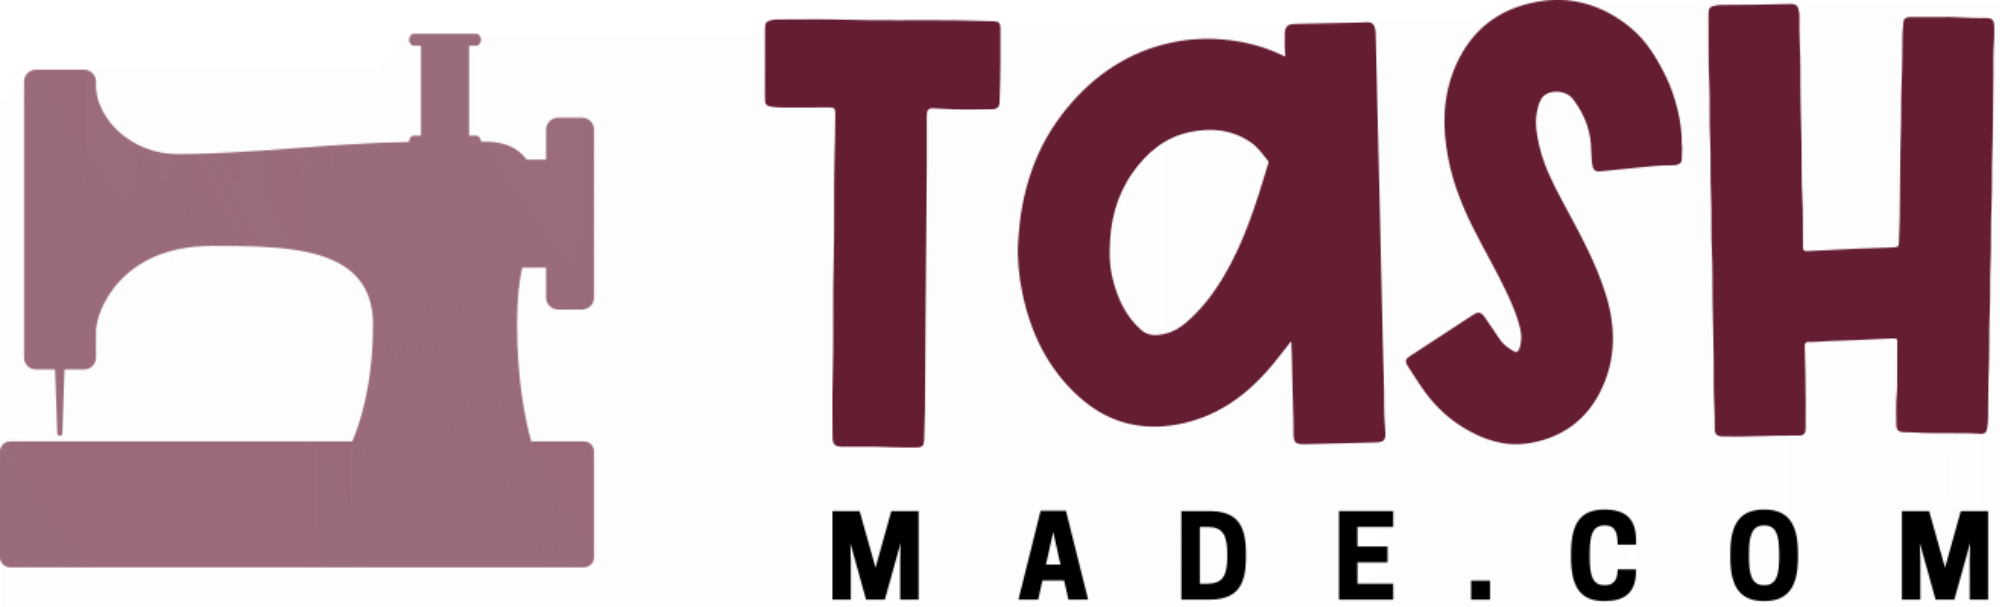 TashMade.com